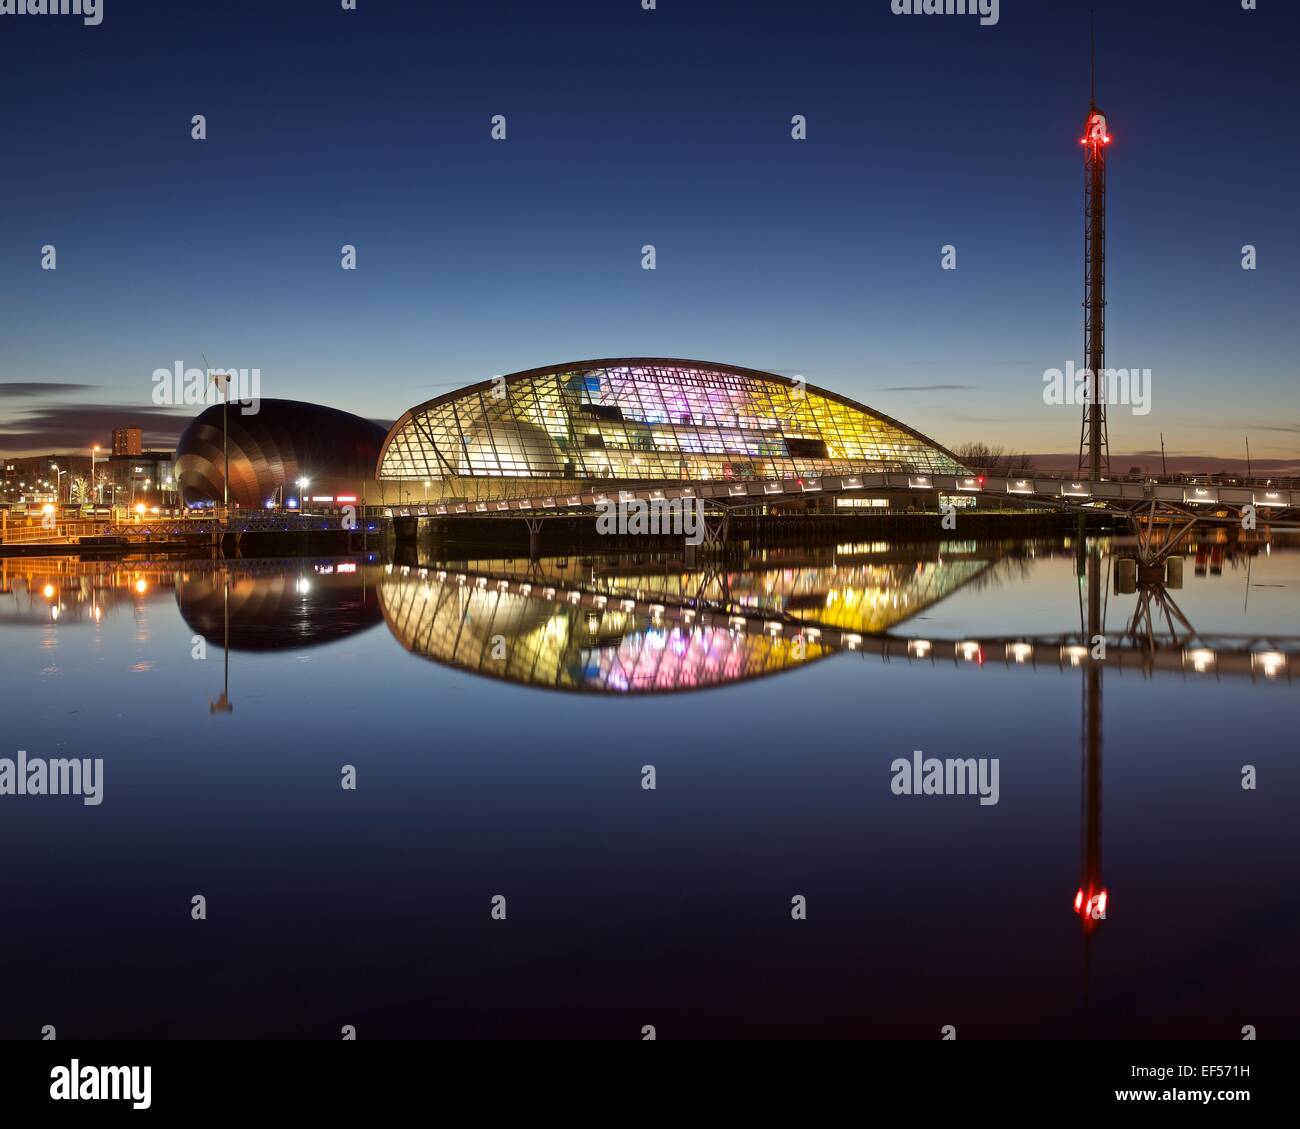 Une image couleur de la Glasgow Science Centre reflétée sur une rivière Clyde toujours prendre le soir heure de flou Banque D'Images